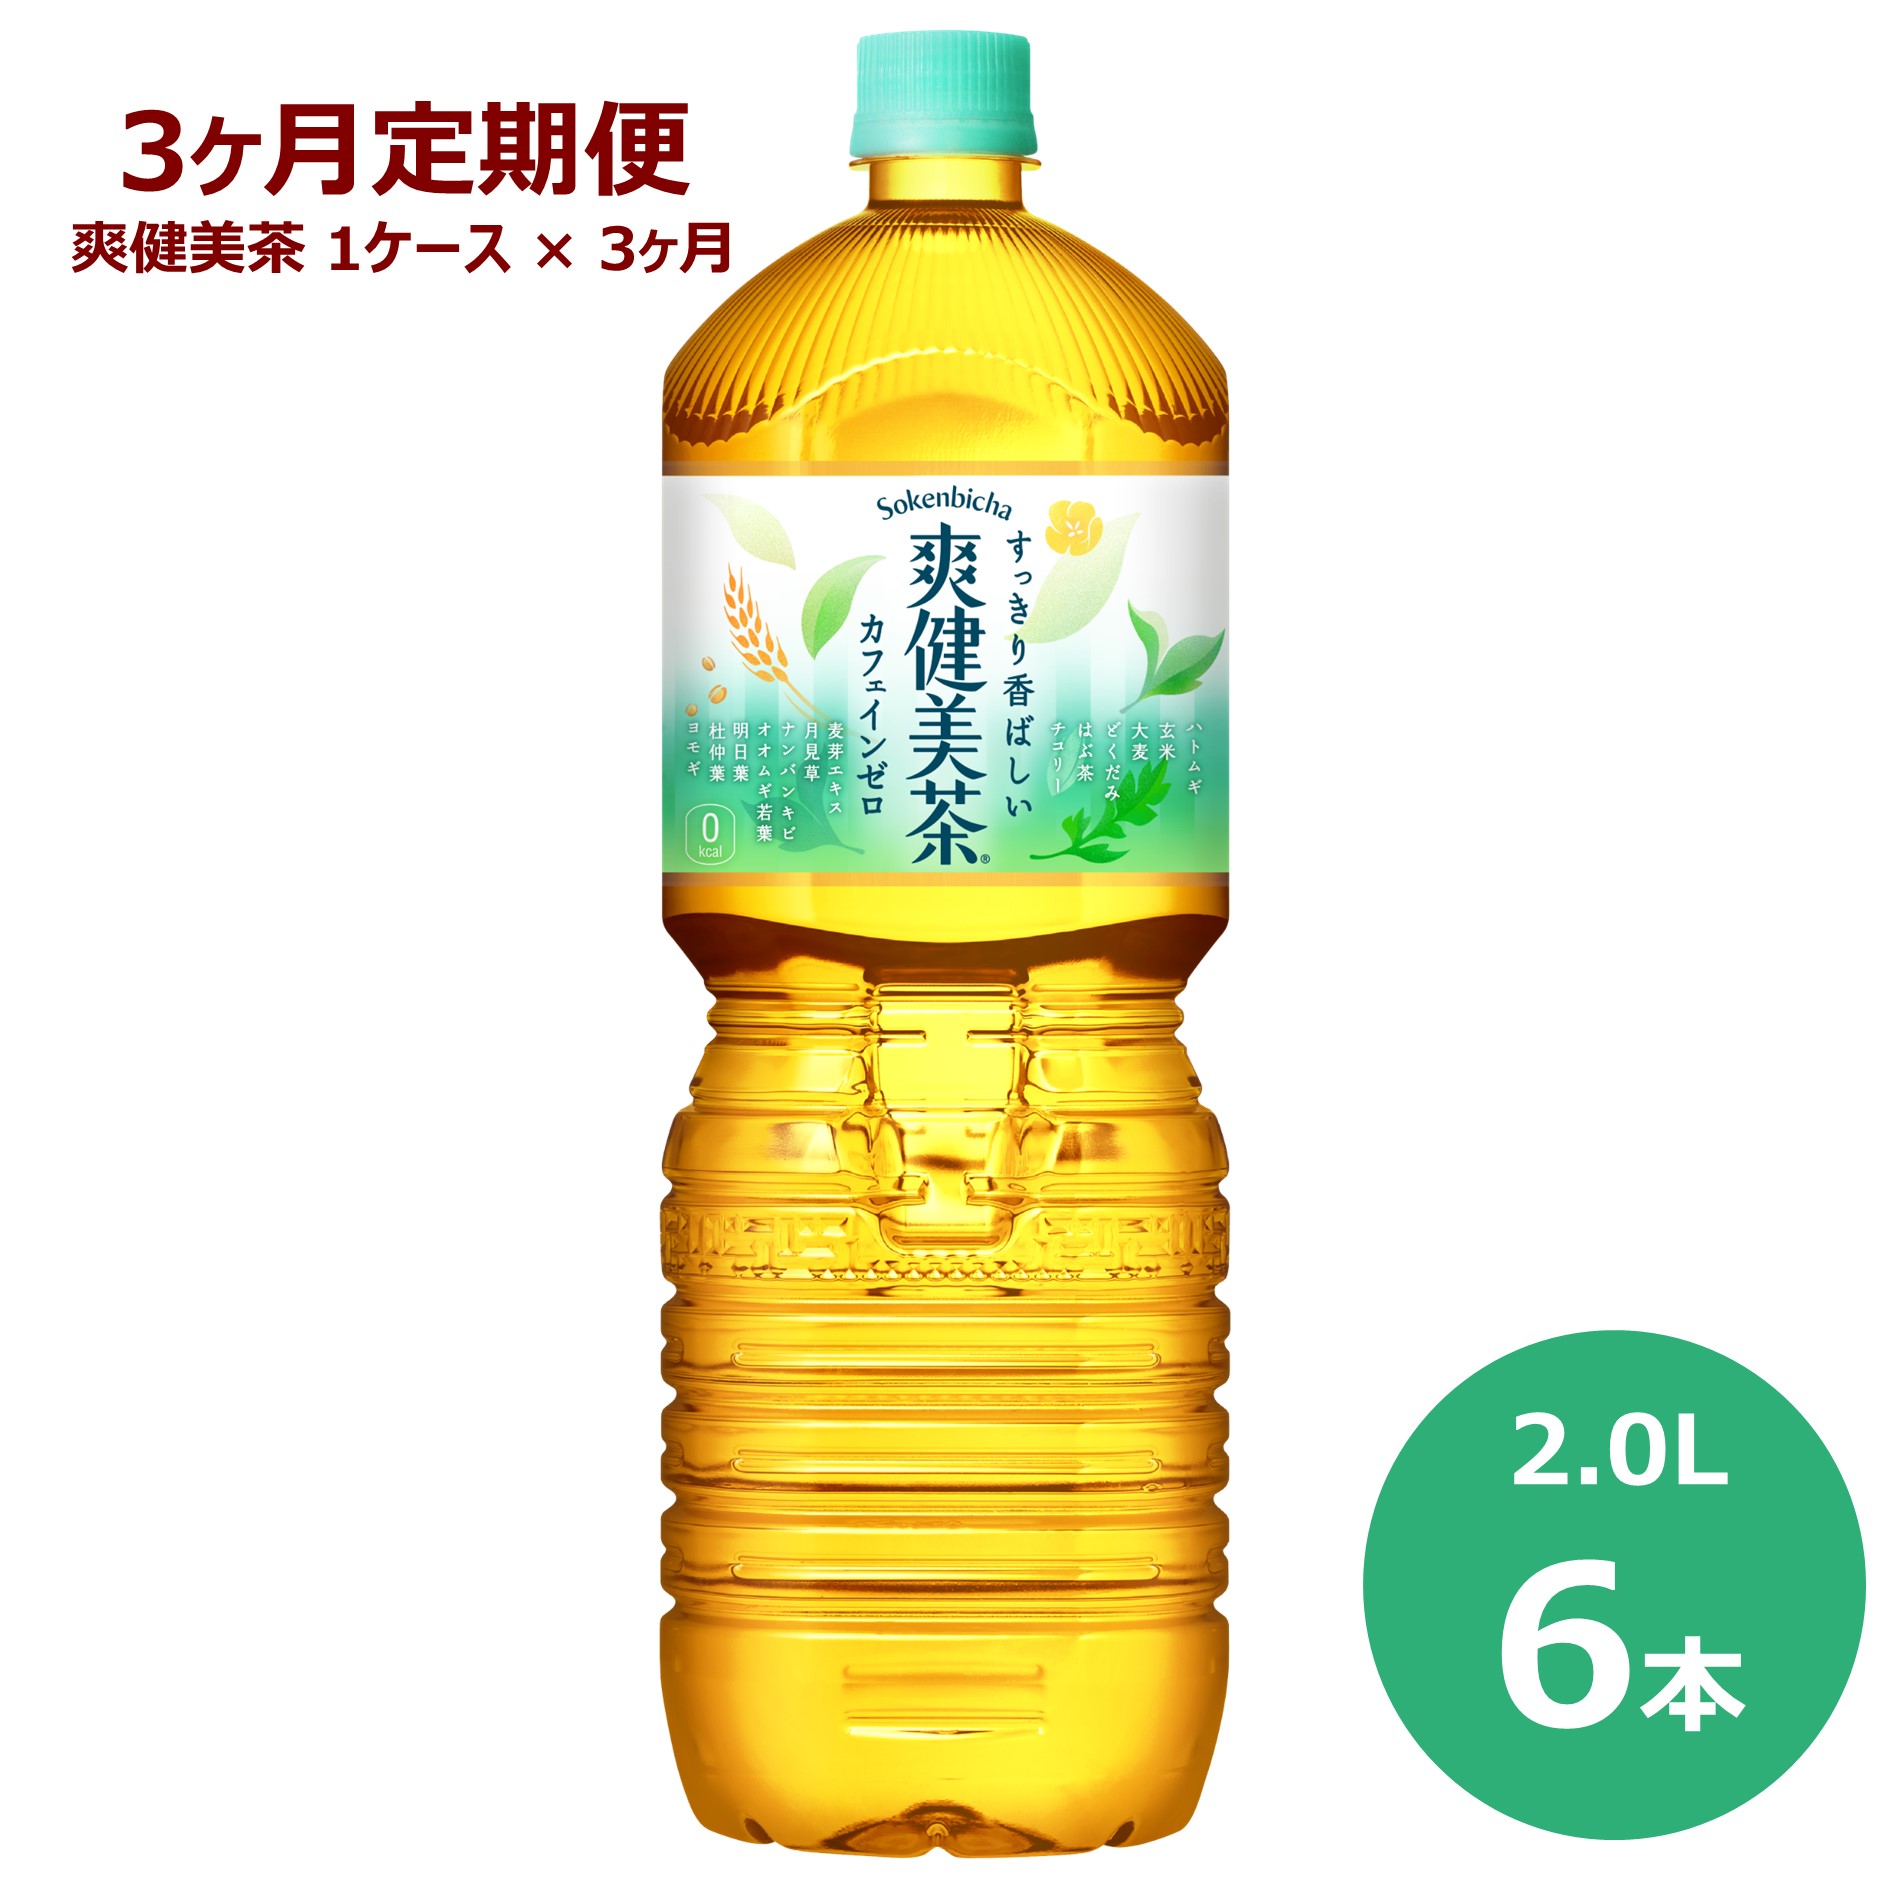 【3ヶ月定期便】爽健美茶 2L ペットボトル 6本セット お茶 カフェインゼロ コカ・コーラ